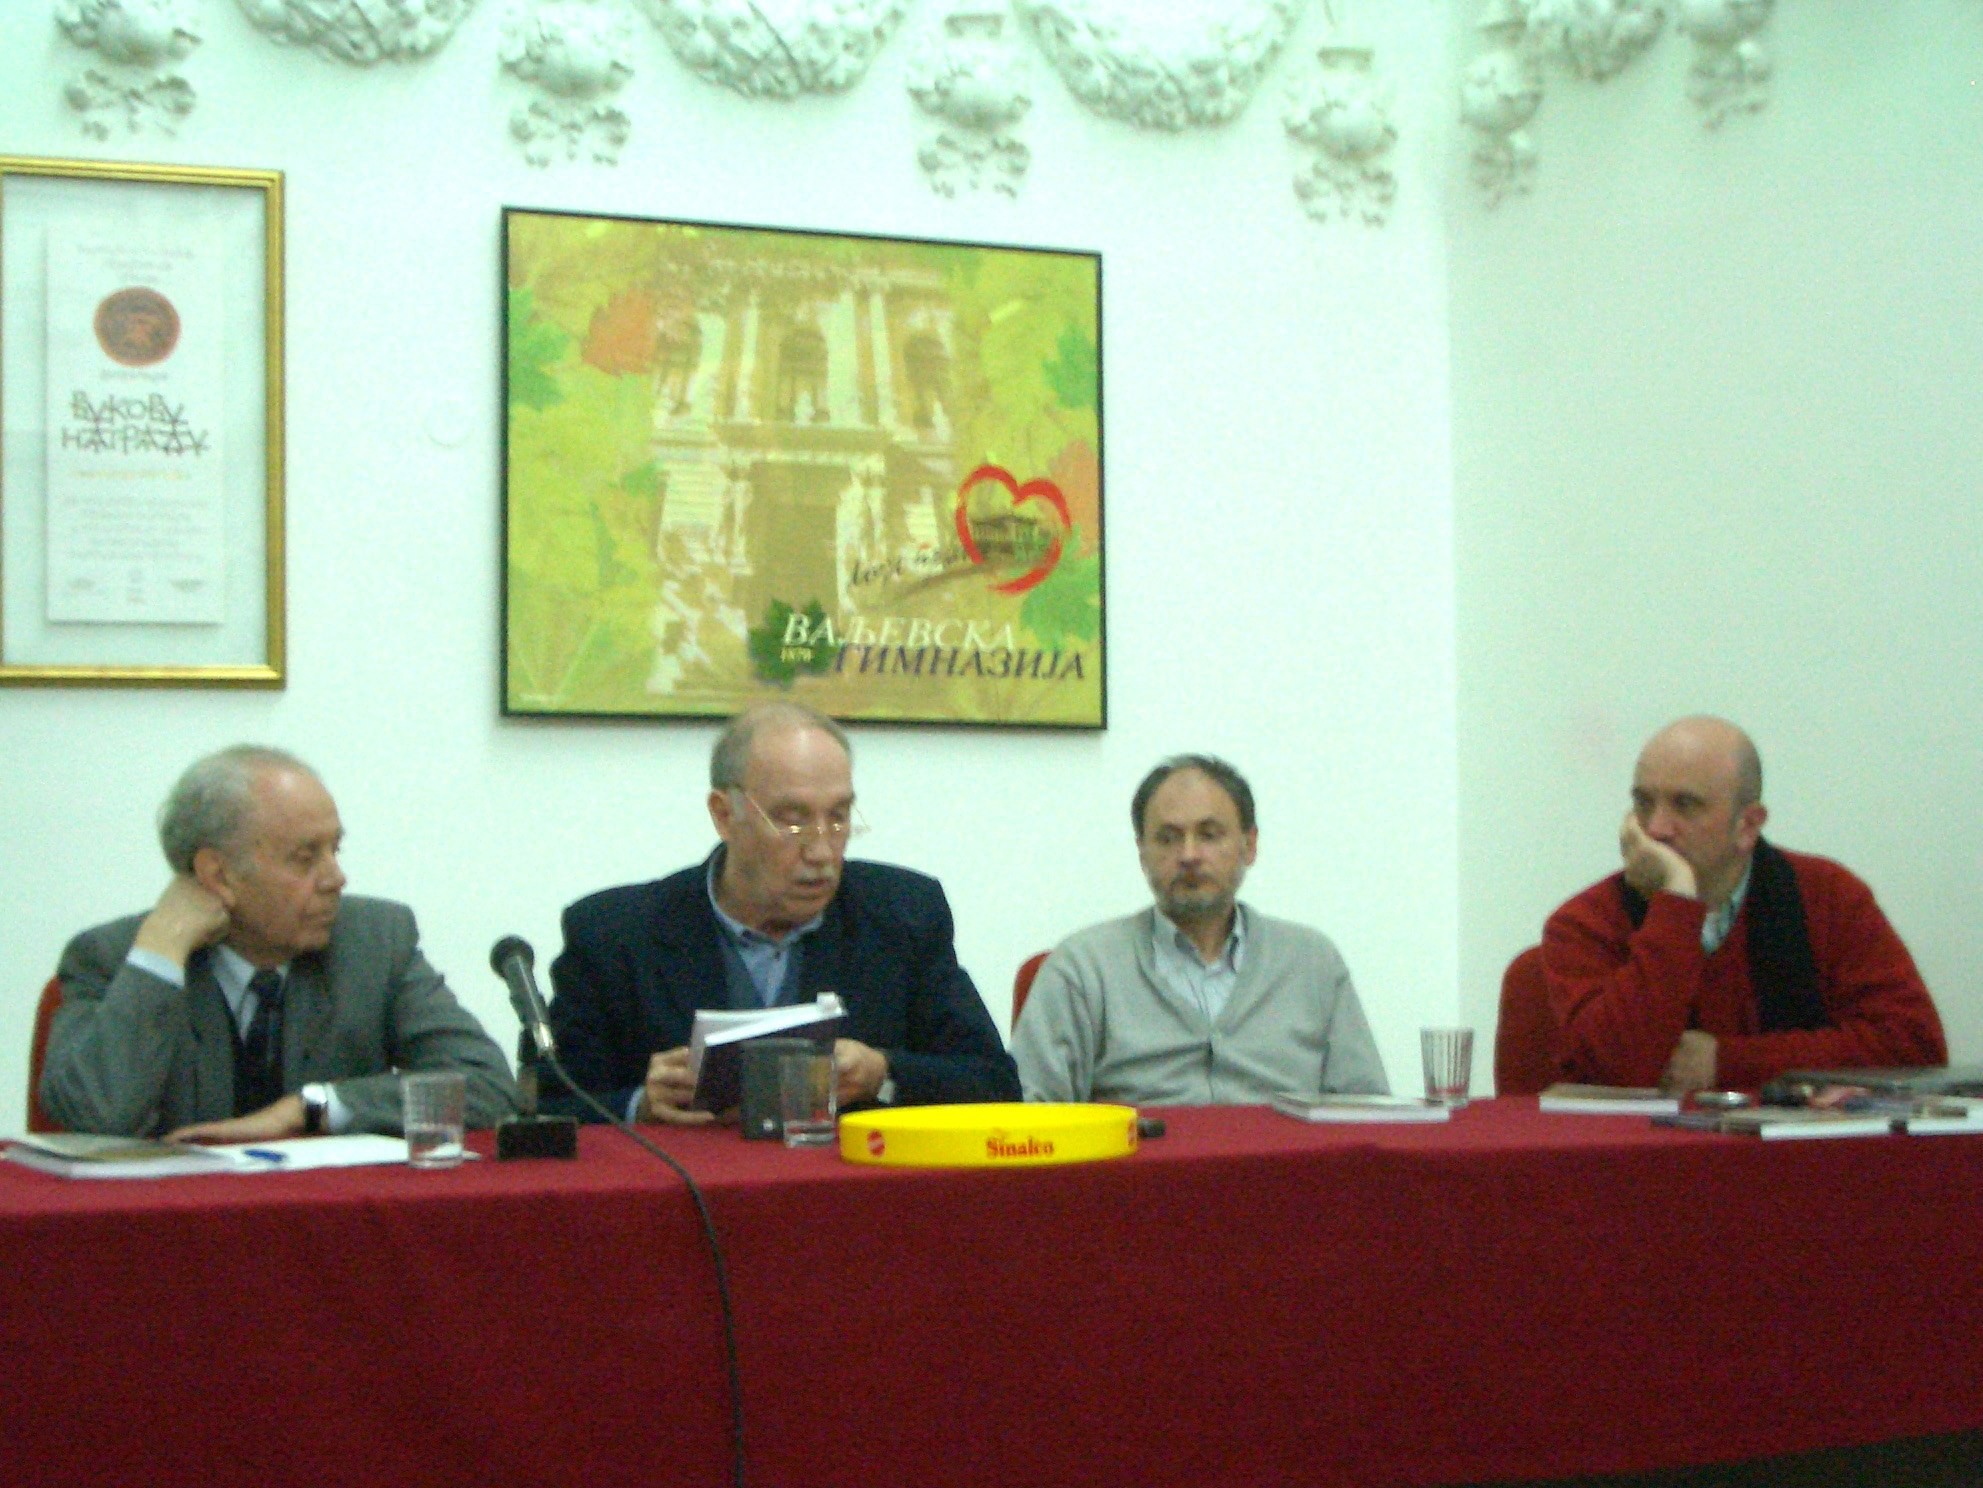 Tribina povodom izlozbe 50 god IAUS-a, Valjevska gimnazija, 21. marta 2005. godine - sa M. Jeftićem, S. Maldinijem i B. Kovačevićem